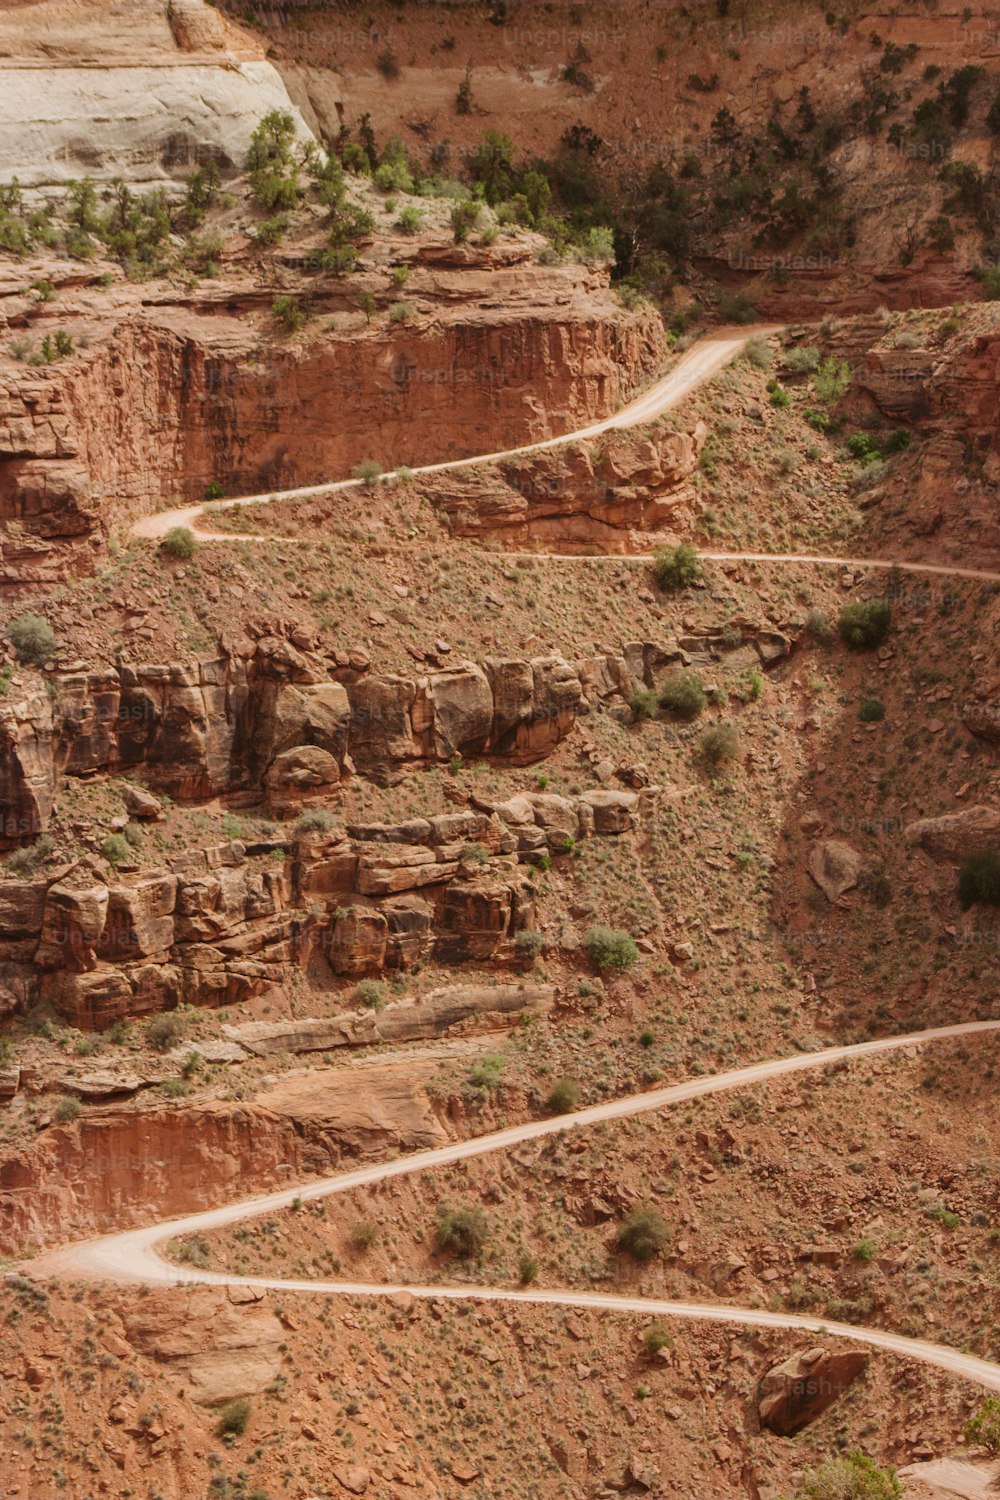 협곡 한가운데에 있는 구불구불한 ��비포장 도로